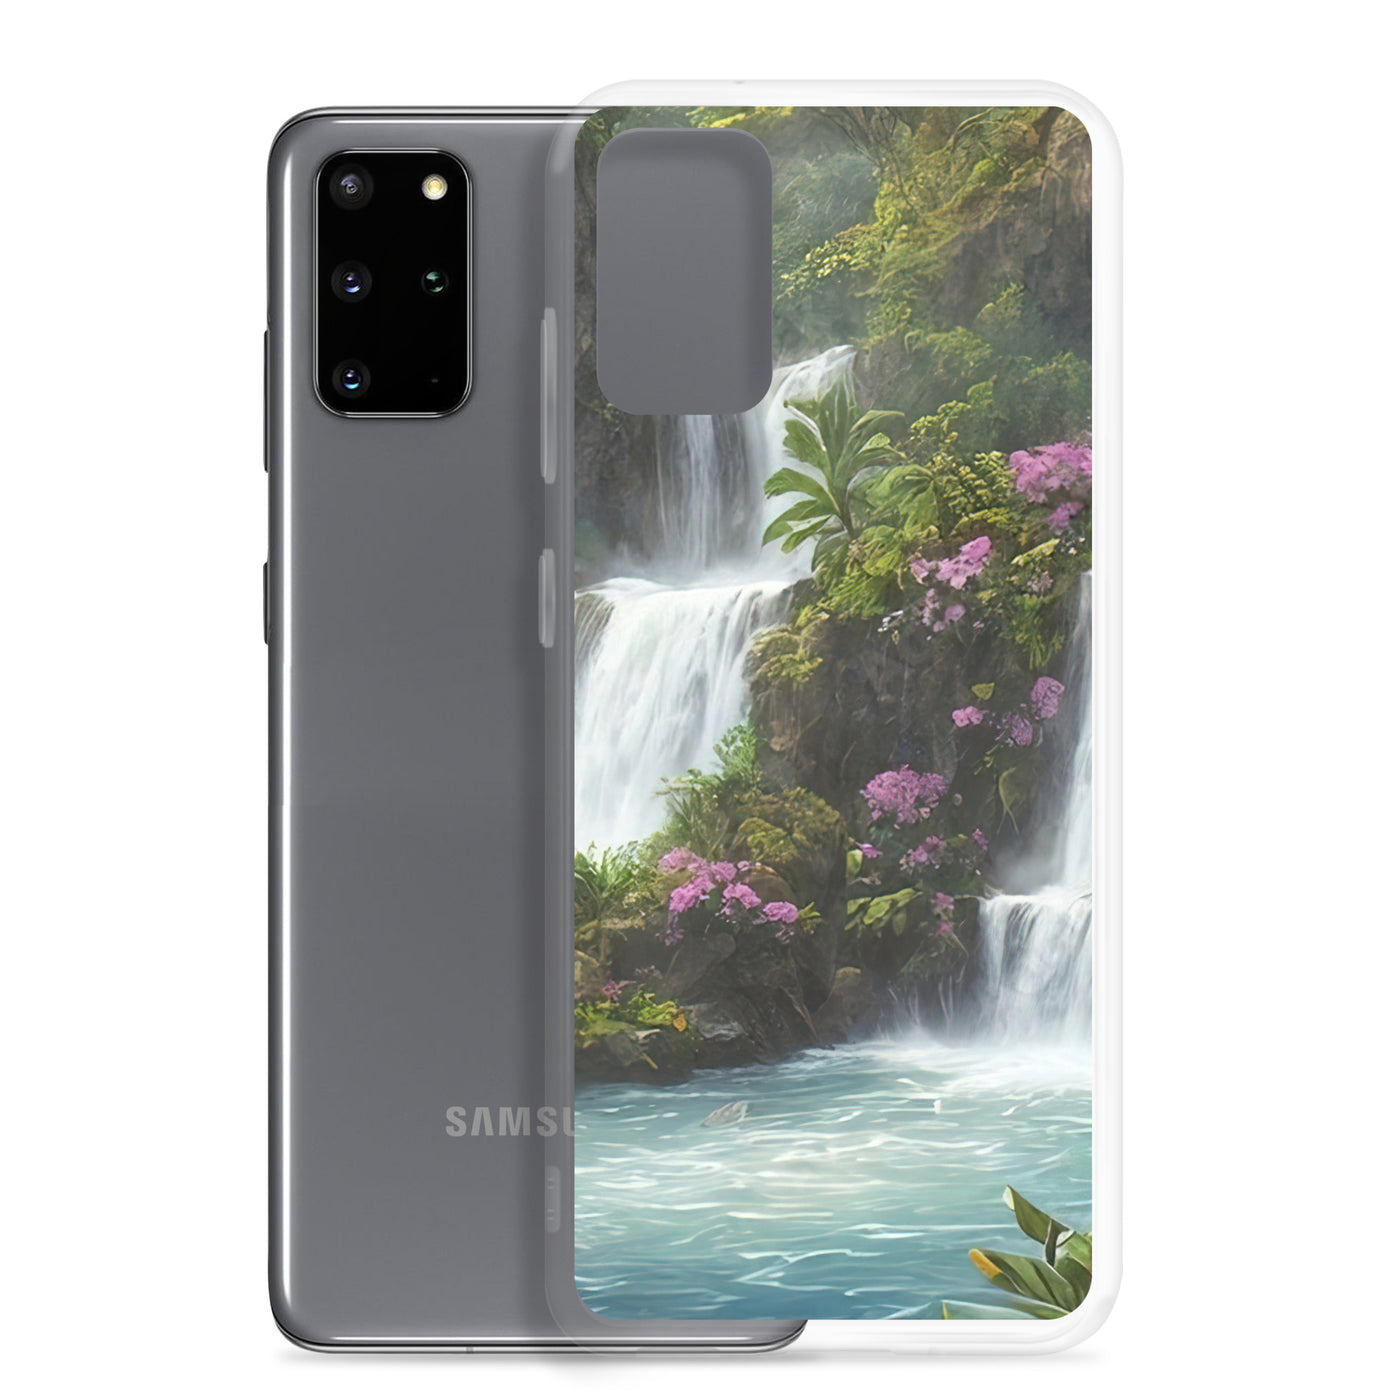 Wasserfall im Wald und Blumen - Schöne Malerei - Samsung Schutzhülle (durchsichtig) camping xxx